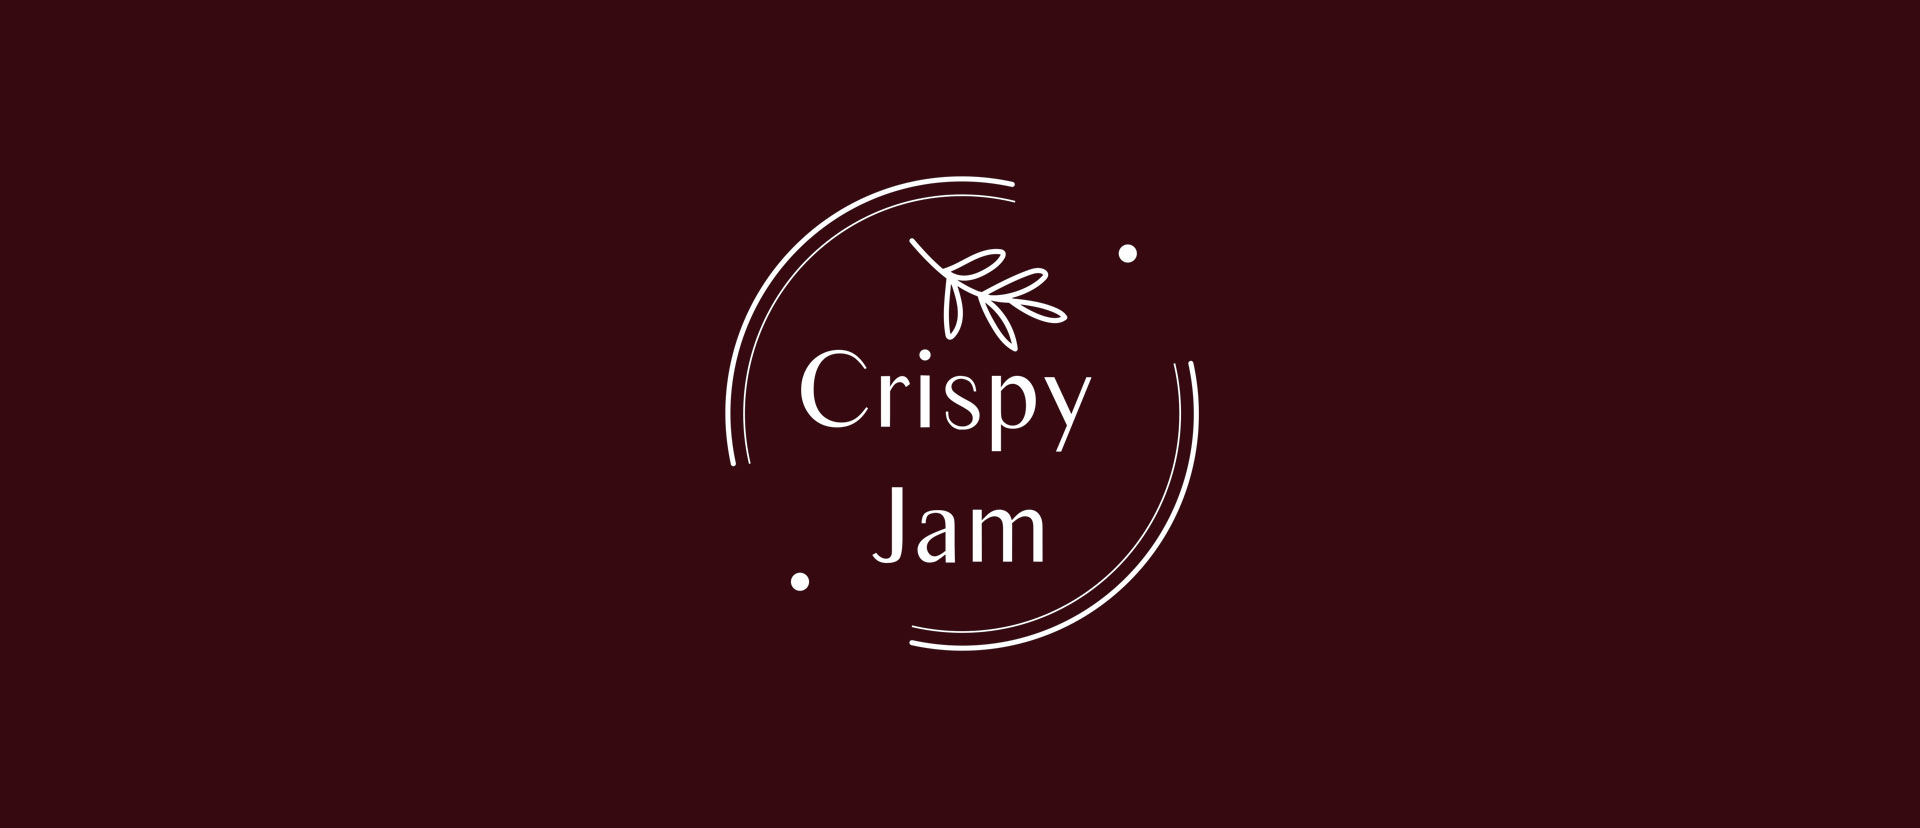 Crispy Jam Packaging Design